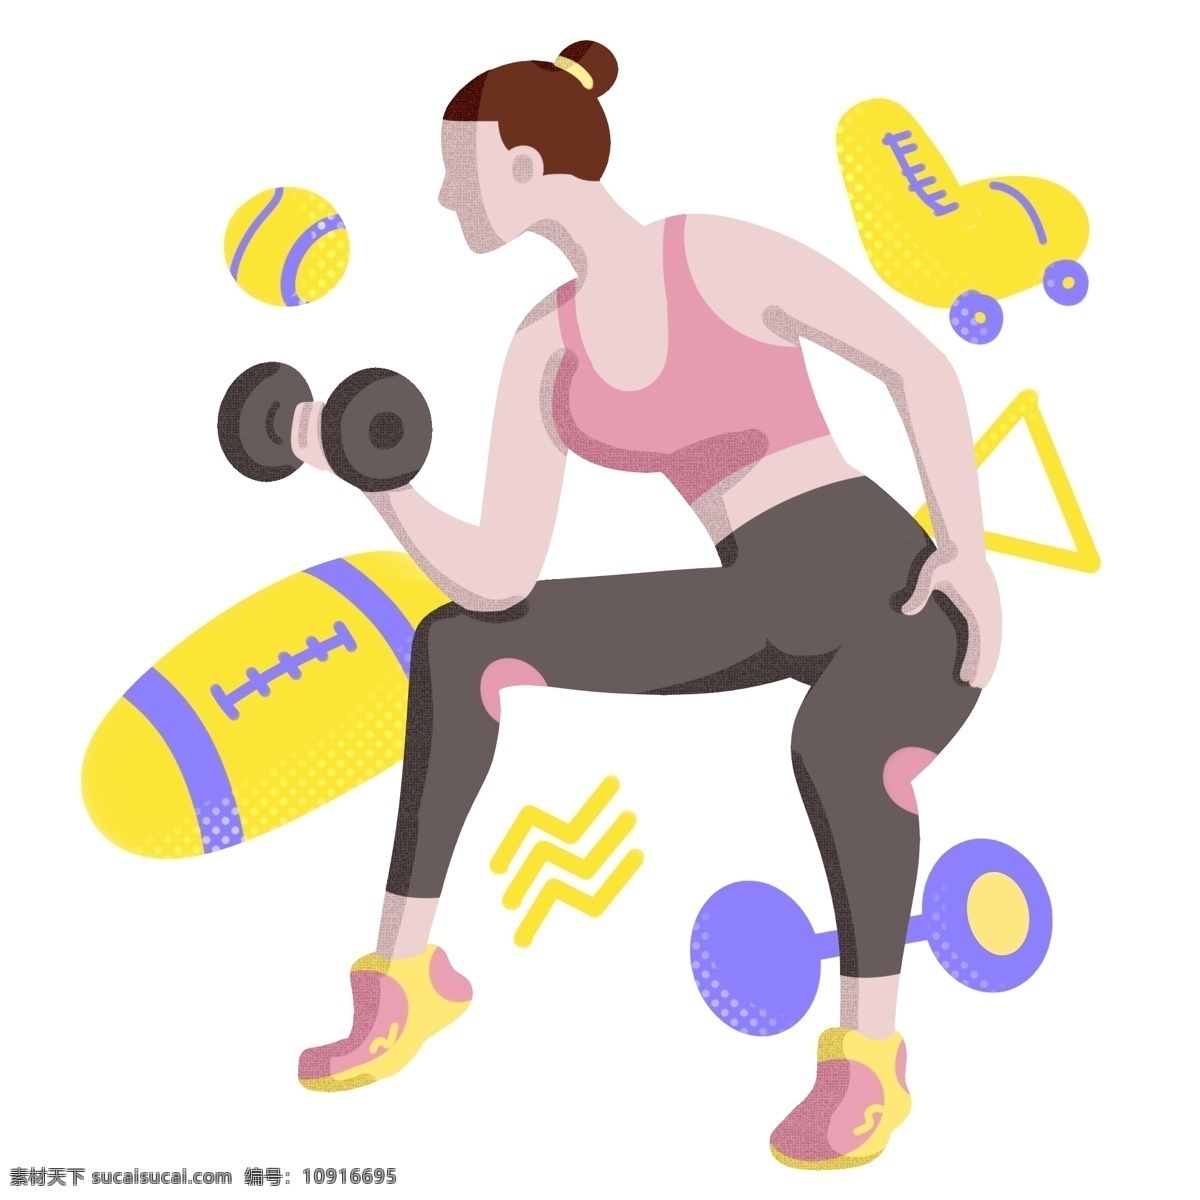 哑铃 健身 女孩 插画 黑色的哑铃 健身的女孩 卡通插画 黄色橄榄球 黄色溜冰鞋 运动 锻炼 健身器材